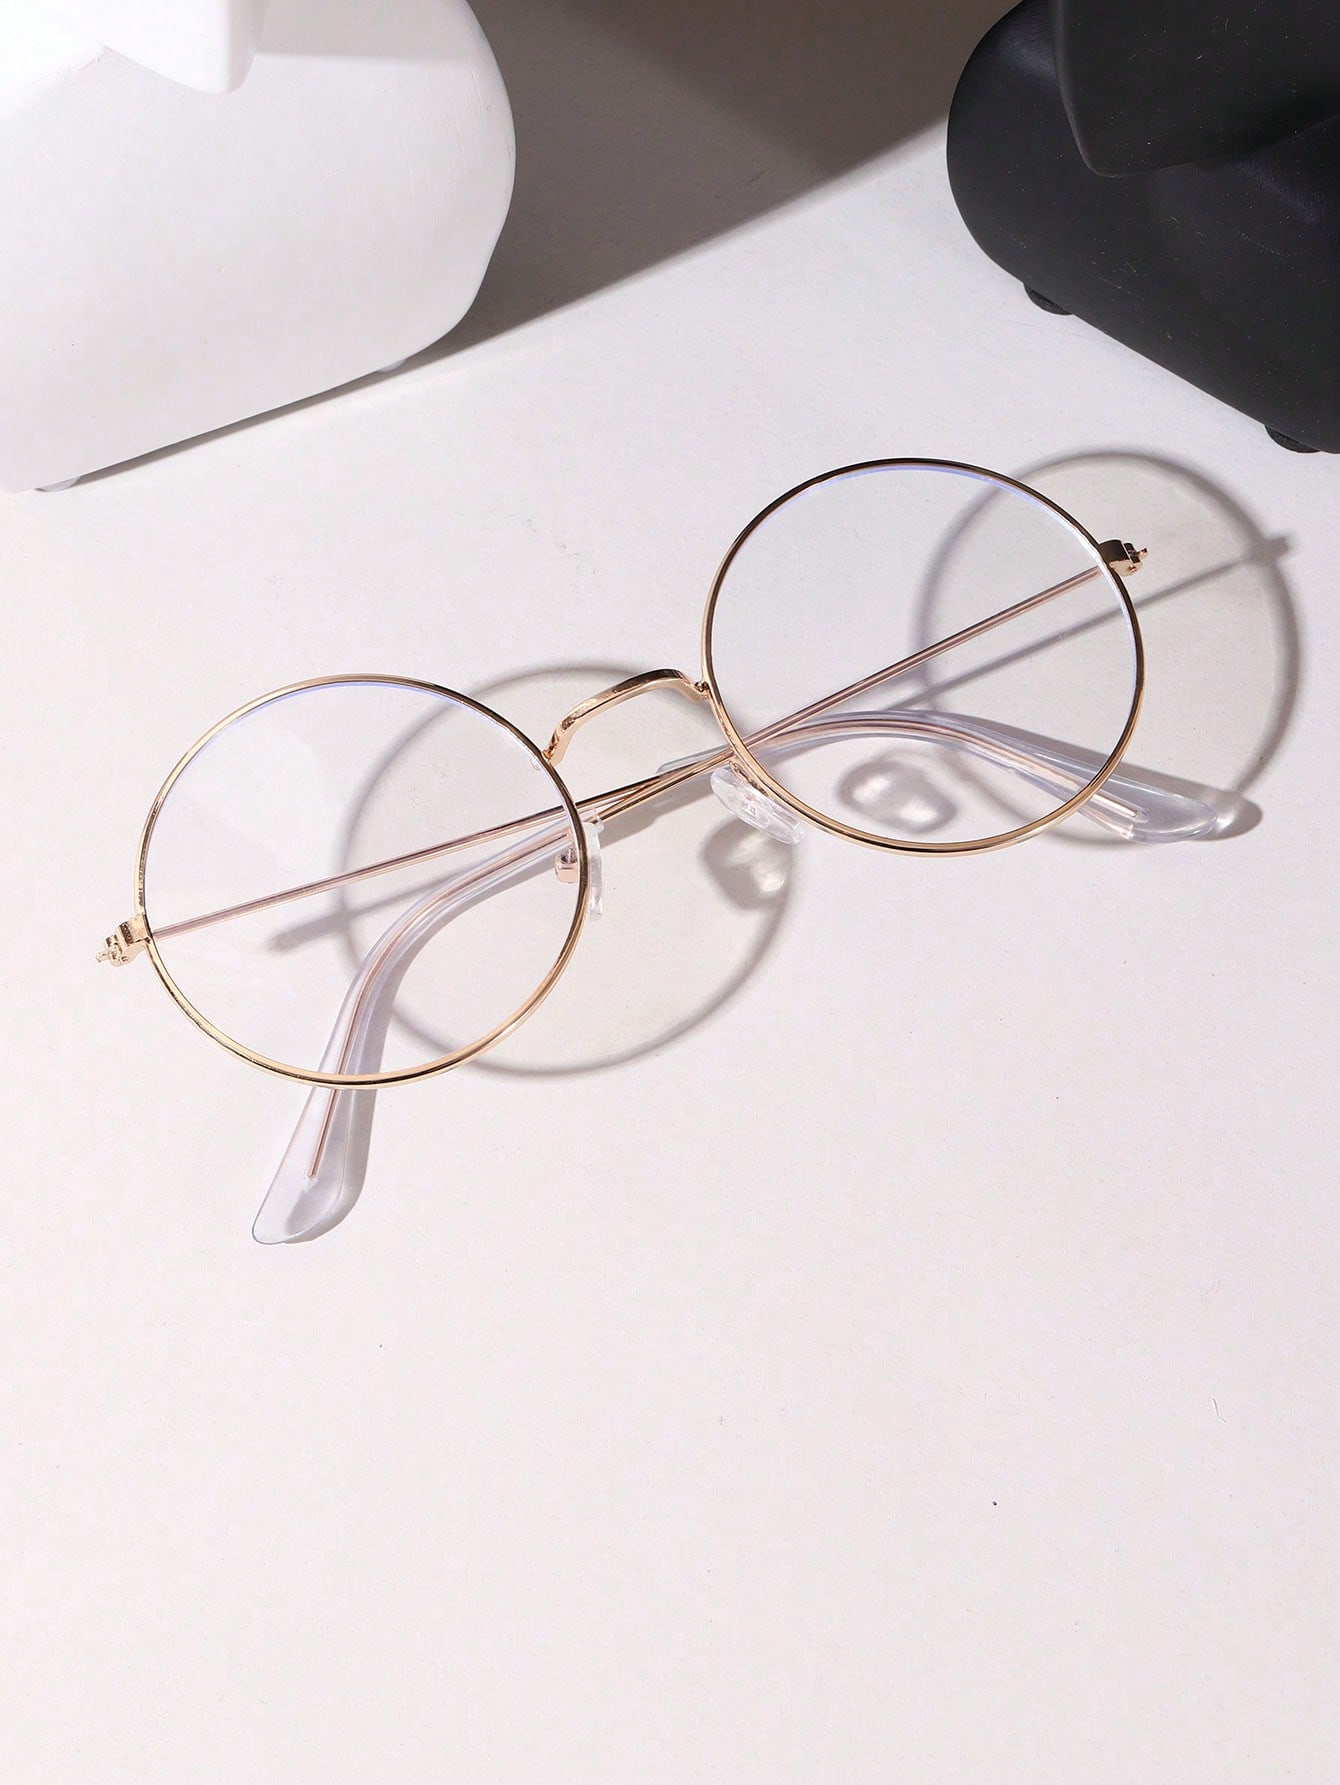 1 шт. винтажные круглые очки Гарри Поттера унисекс с прозрачными линзами очки гарри поттера антибликовые